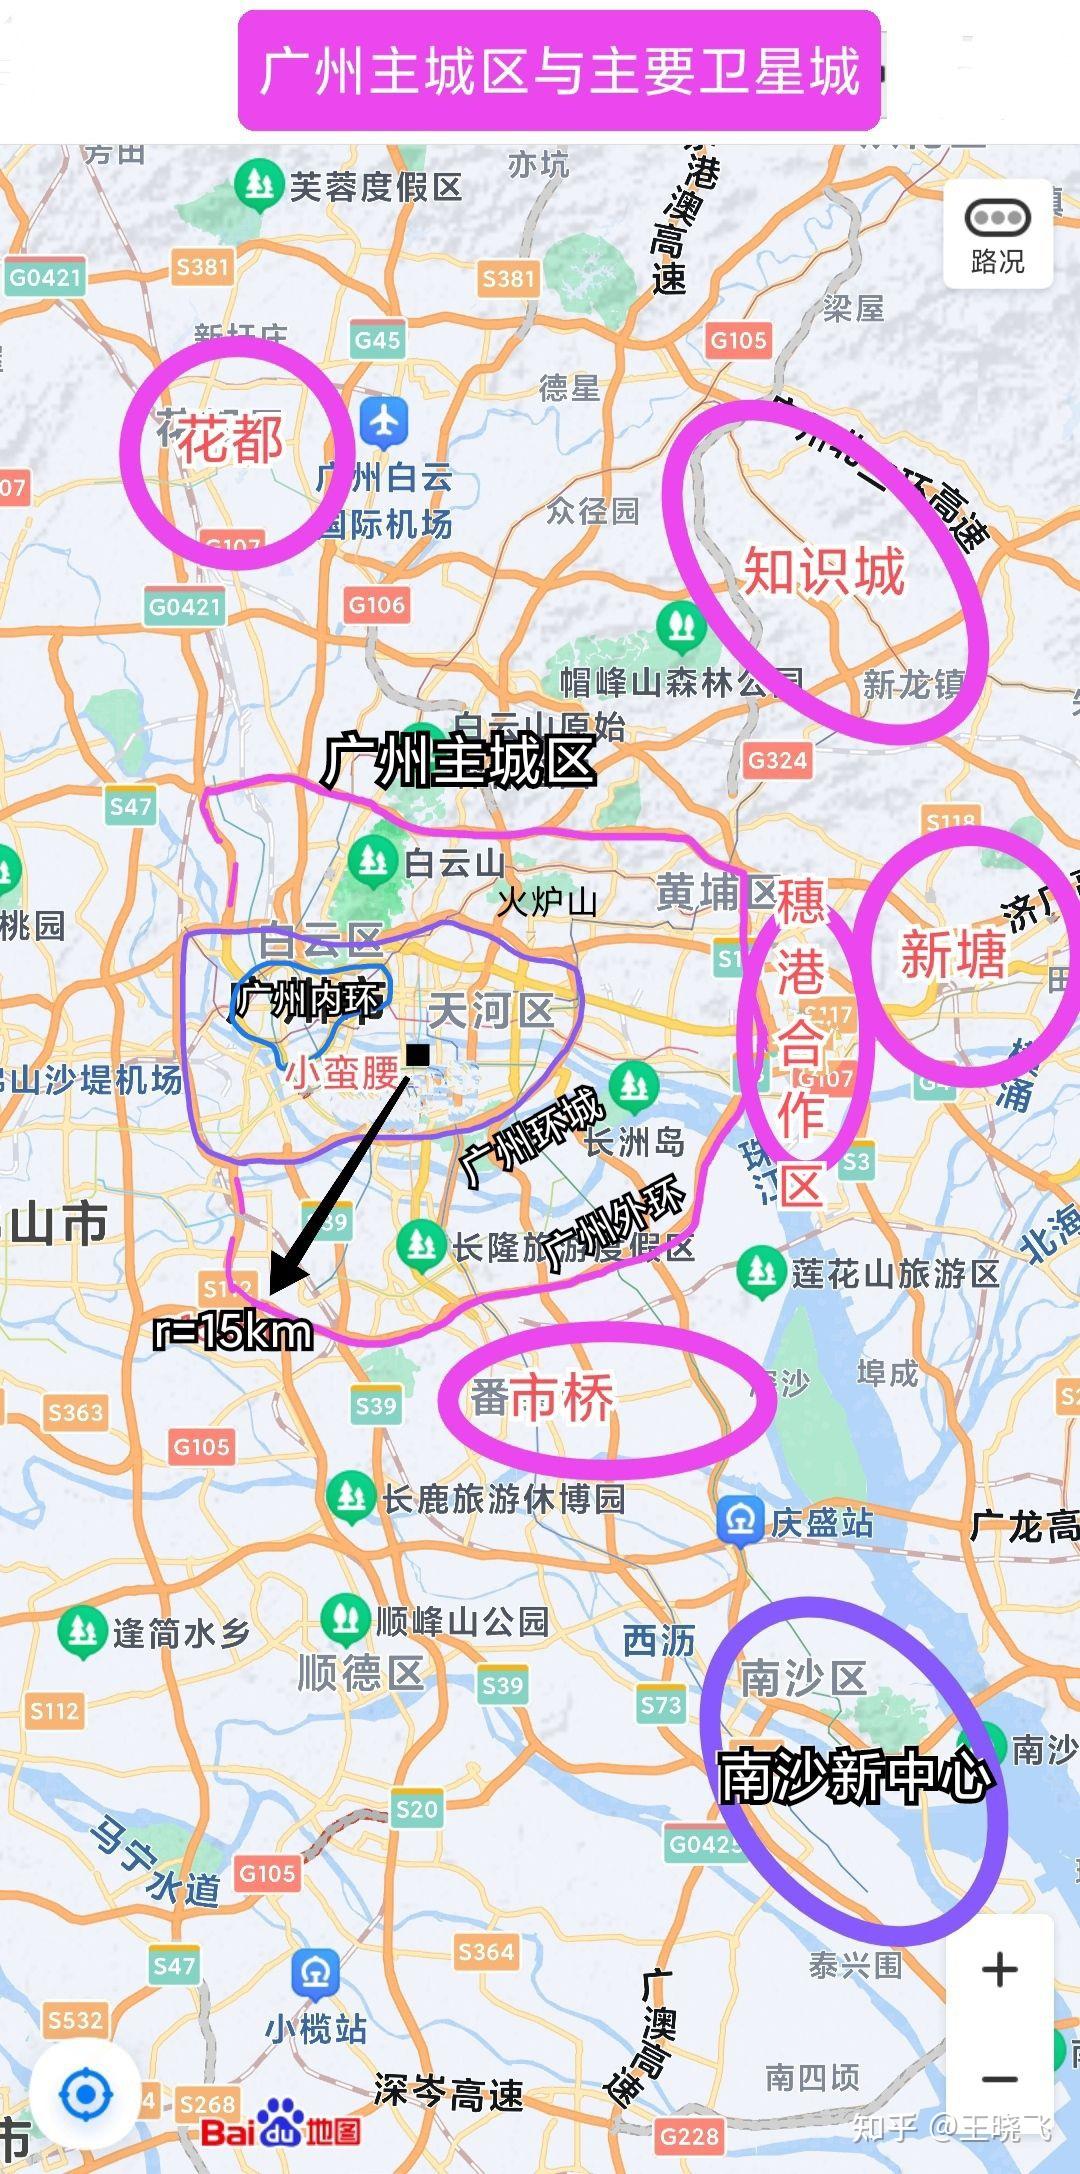 5 2商圈,告诉你广州城市核心在哪,主城区范围在哪